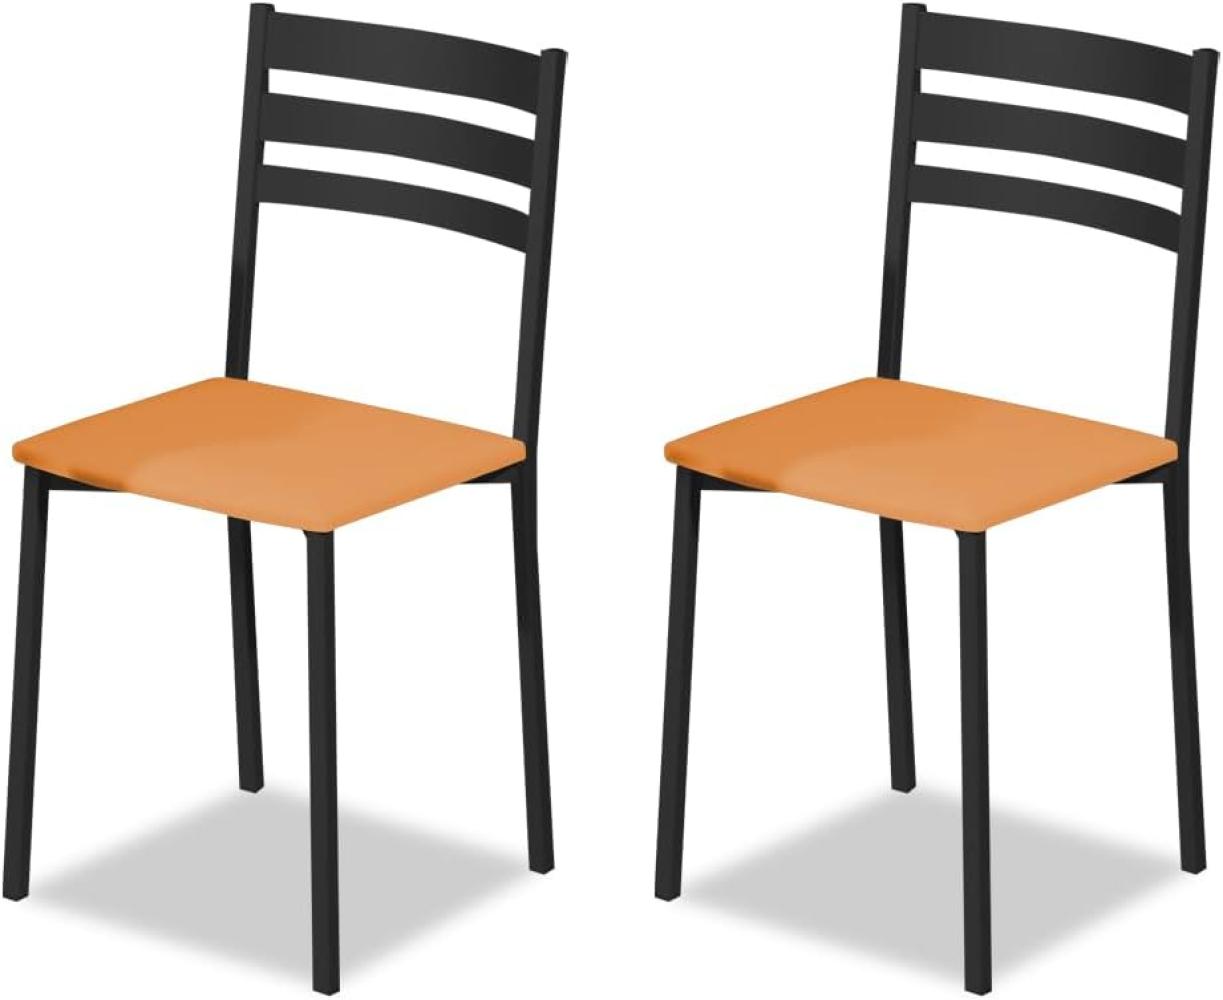 ASTIMESA Küchenstuhl aus Metall mit offener Rückenlehne, orange, 52 cm x 45 cm x 40 cm Bild 1